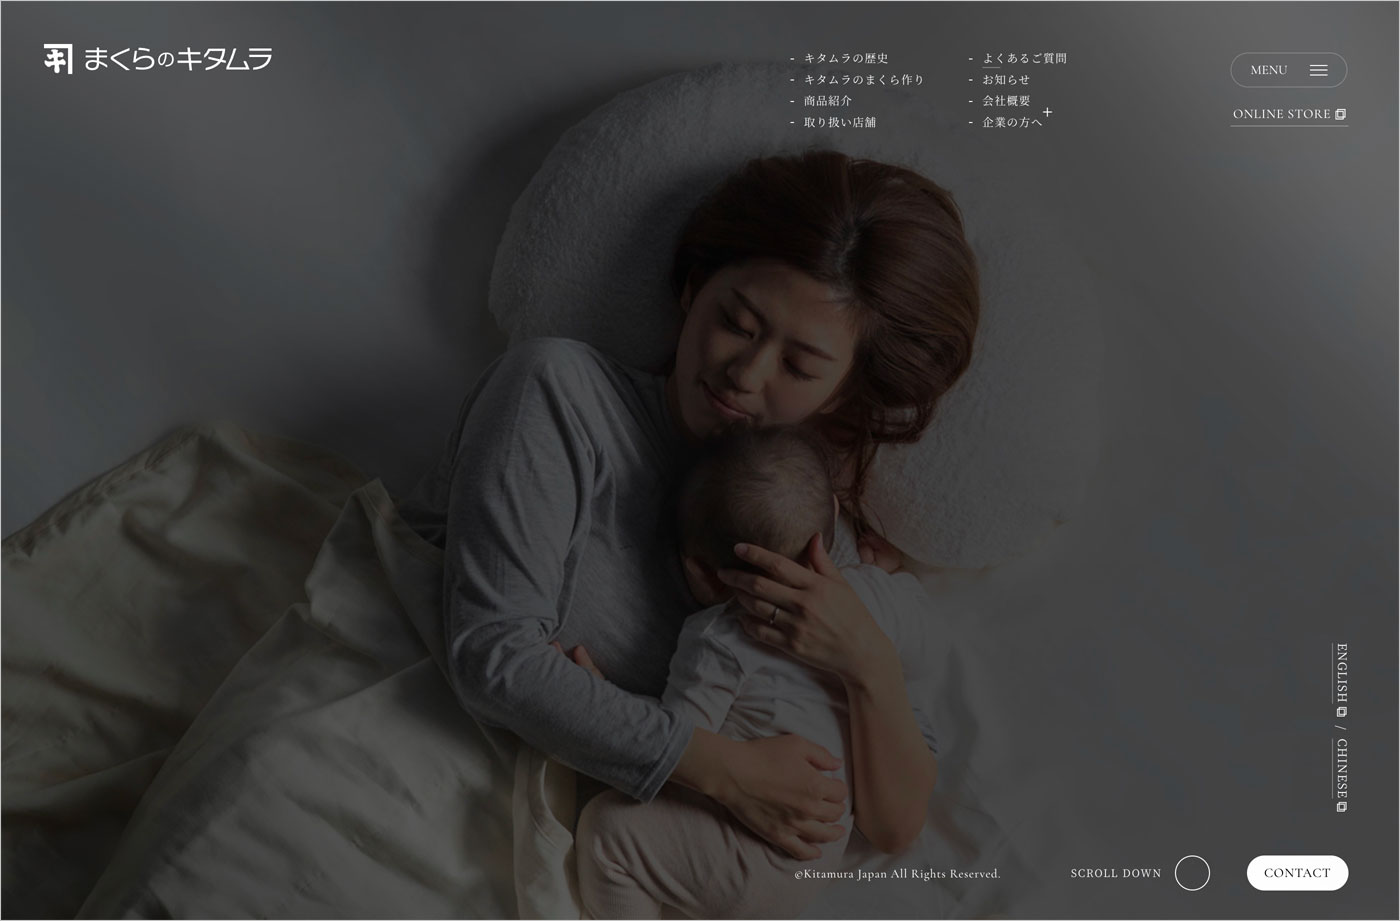 まくらのキタムラ – 心と体の健康や豊かな生活に役立つ枕メーカーウェブサイトの画面キャプチャ画像